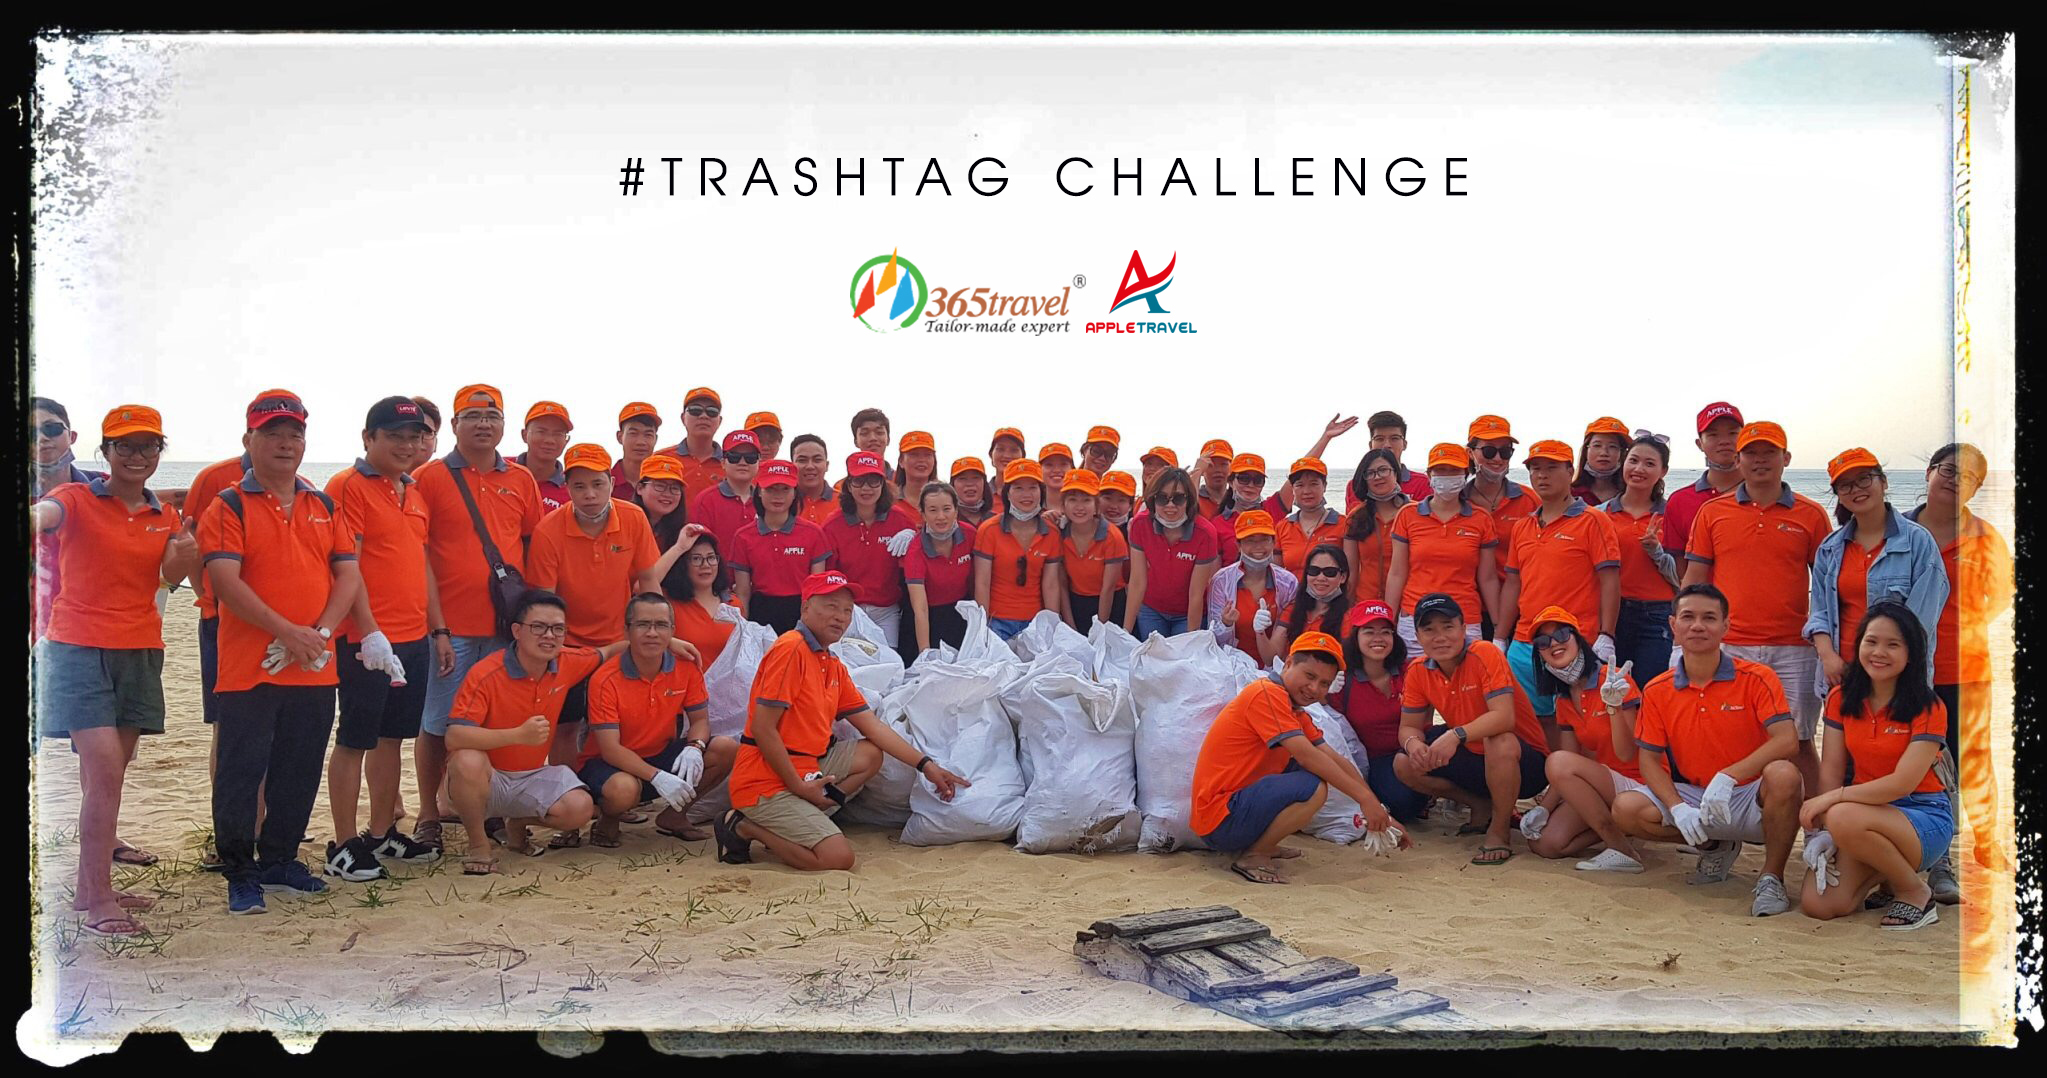 365 Travel #trashtag challenge